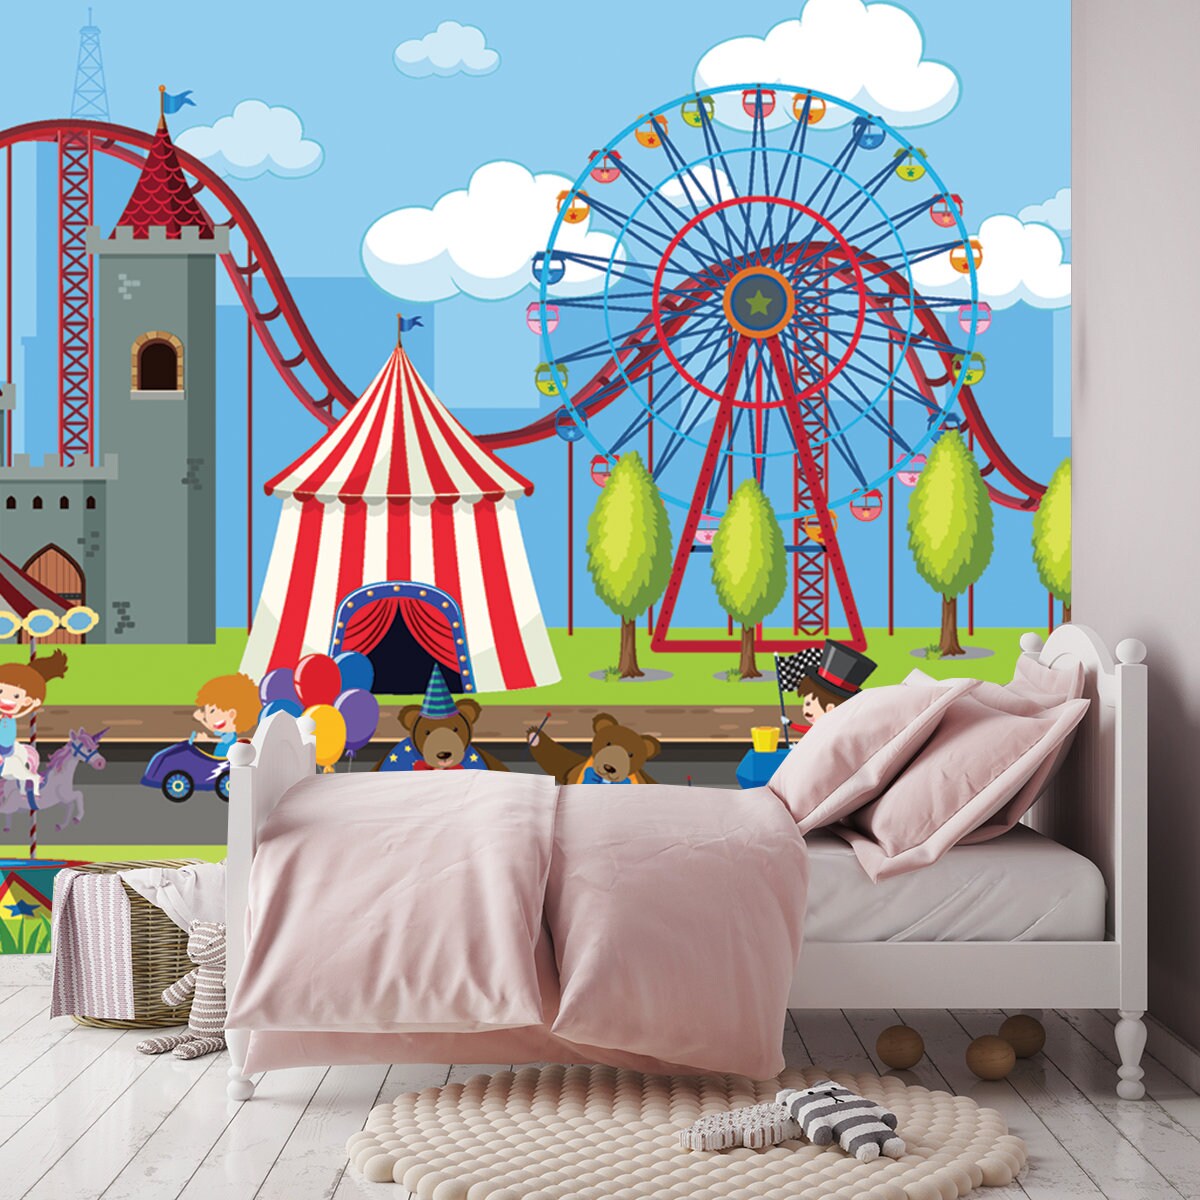 Amusement Park Scene with Ferris Wheel Illustration Wallpaper Girl Bedroom Mural